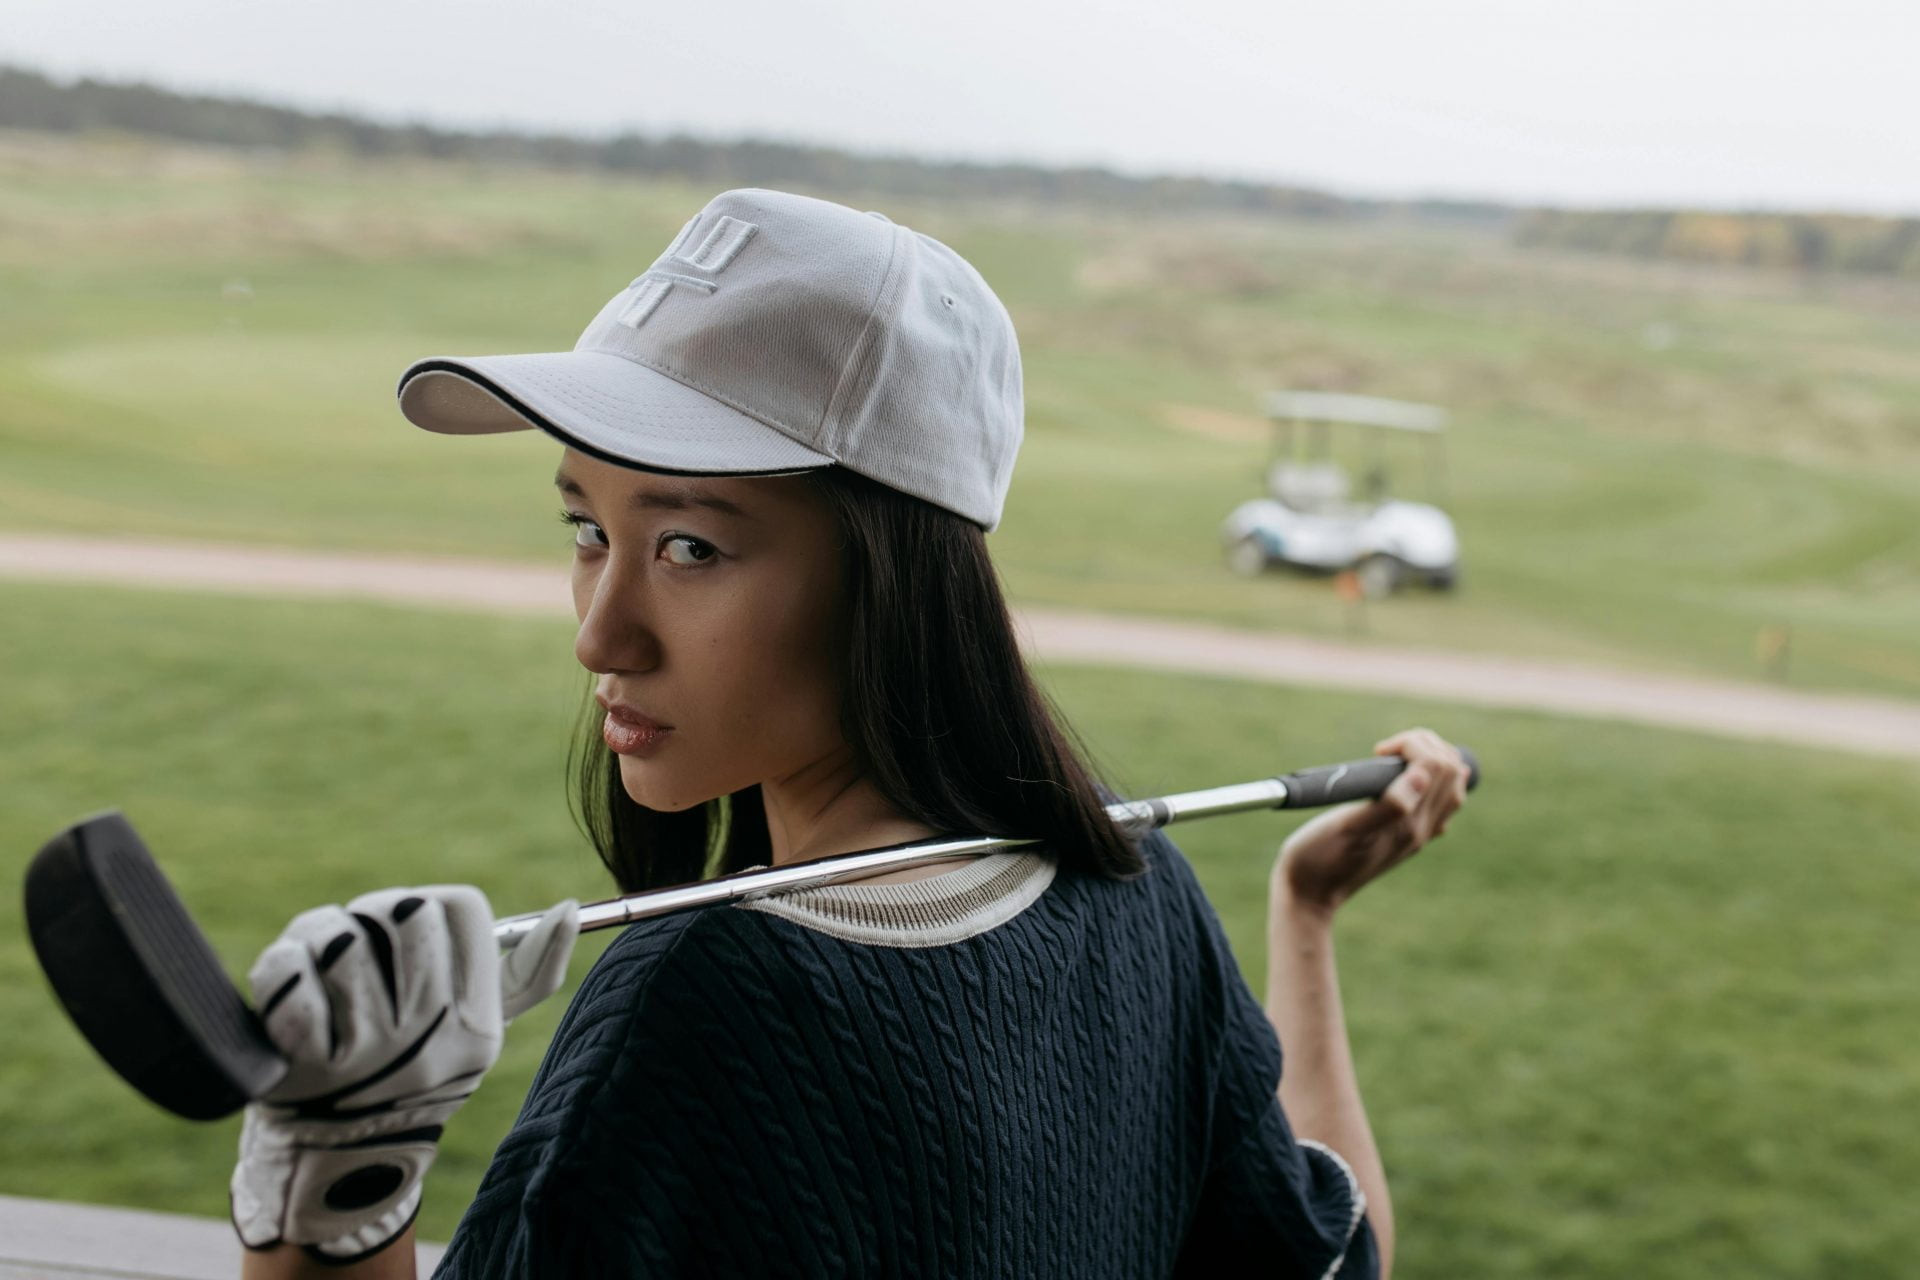 CEO nữ mất gì khi không chơi golf?